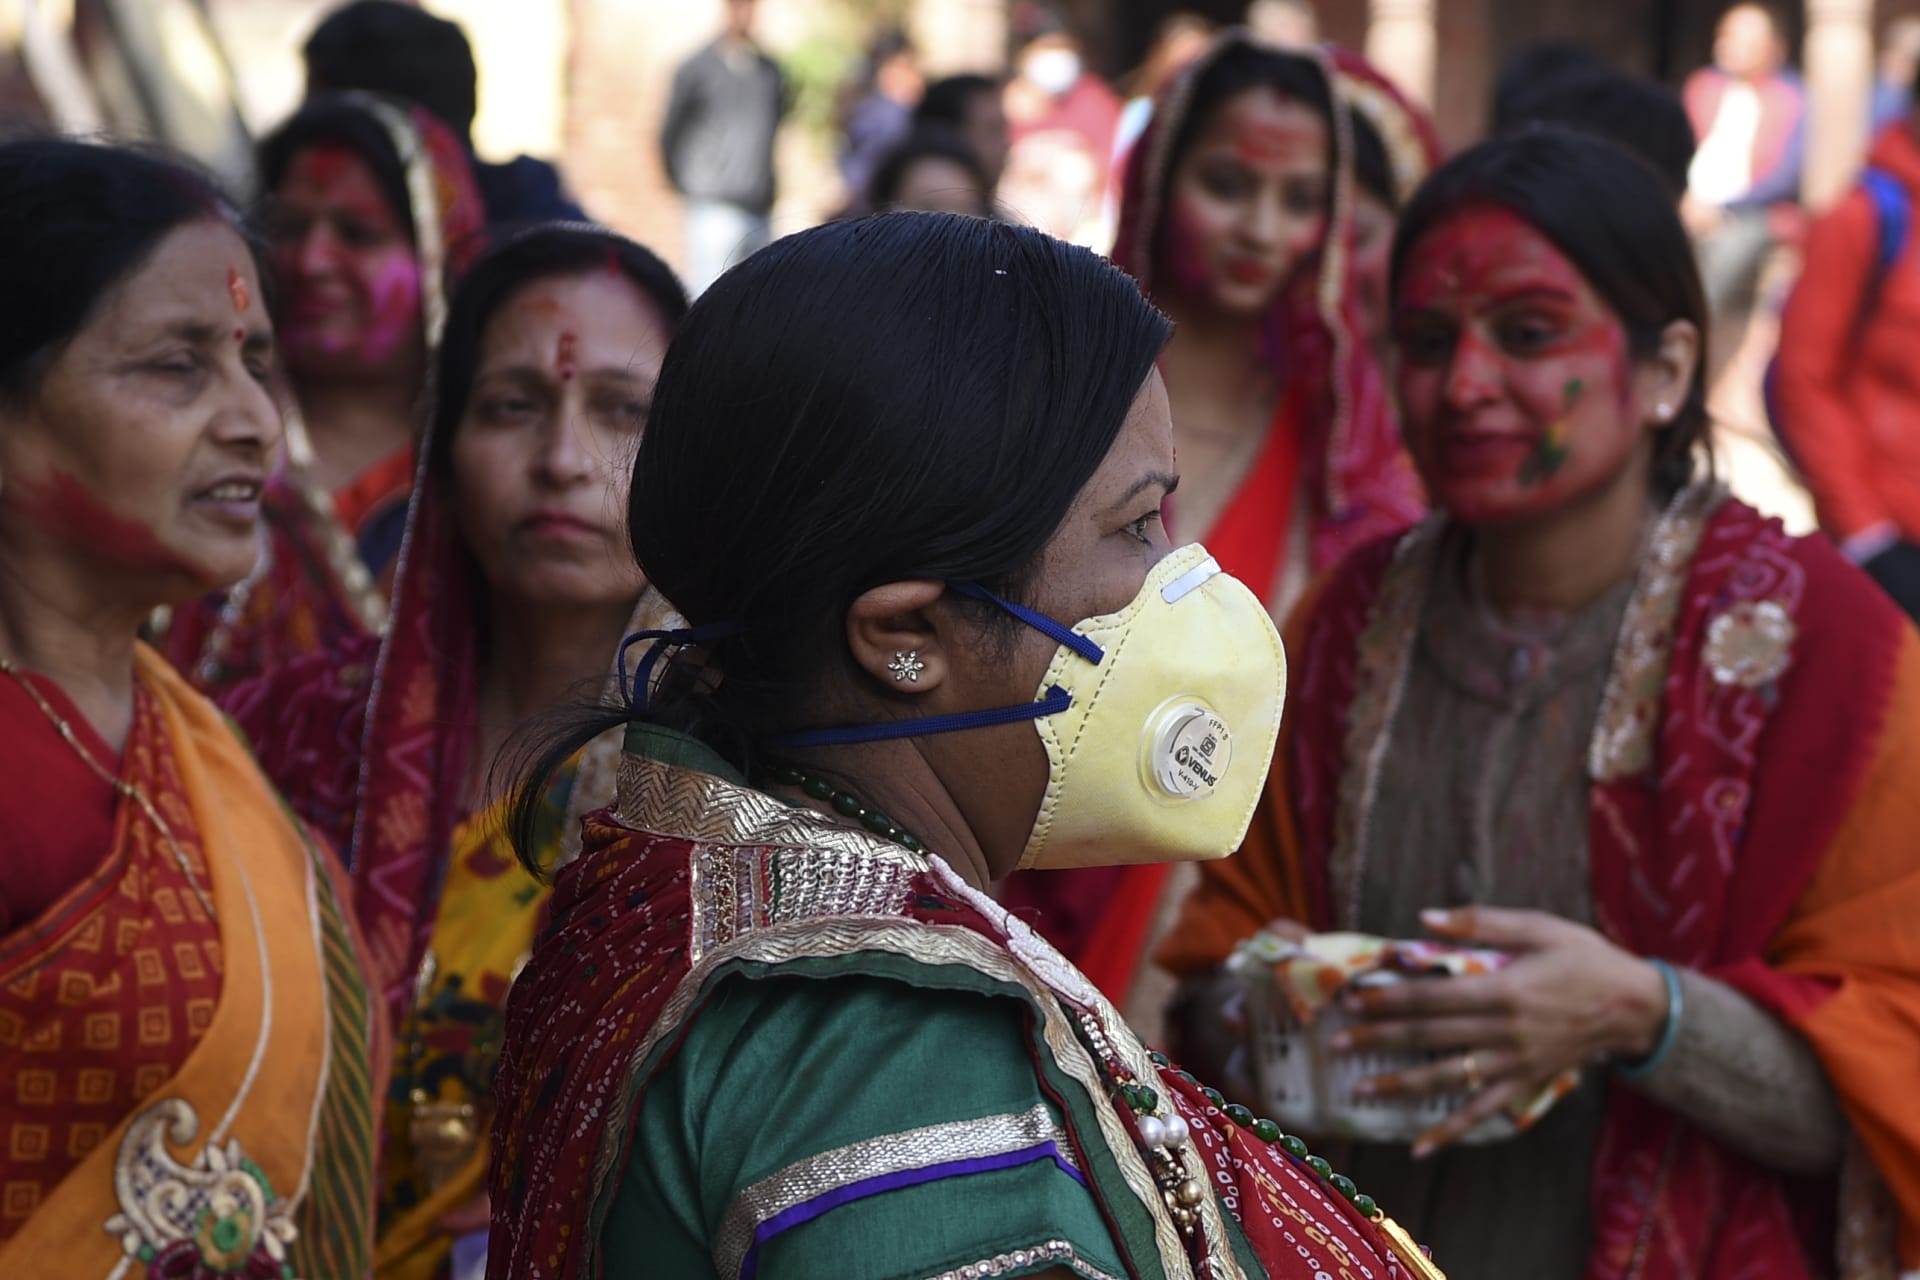 باستخدام الأقنعة.. مهرجان الألوان بالهند يستمر رغم مخاوف فيروس كورونا